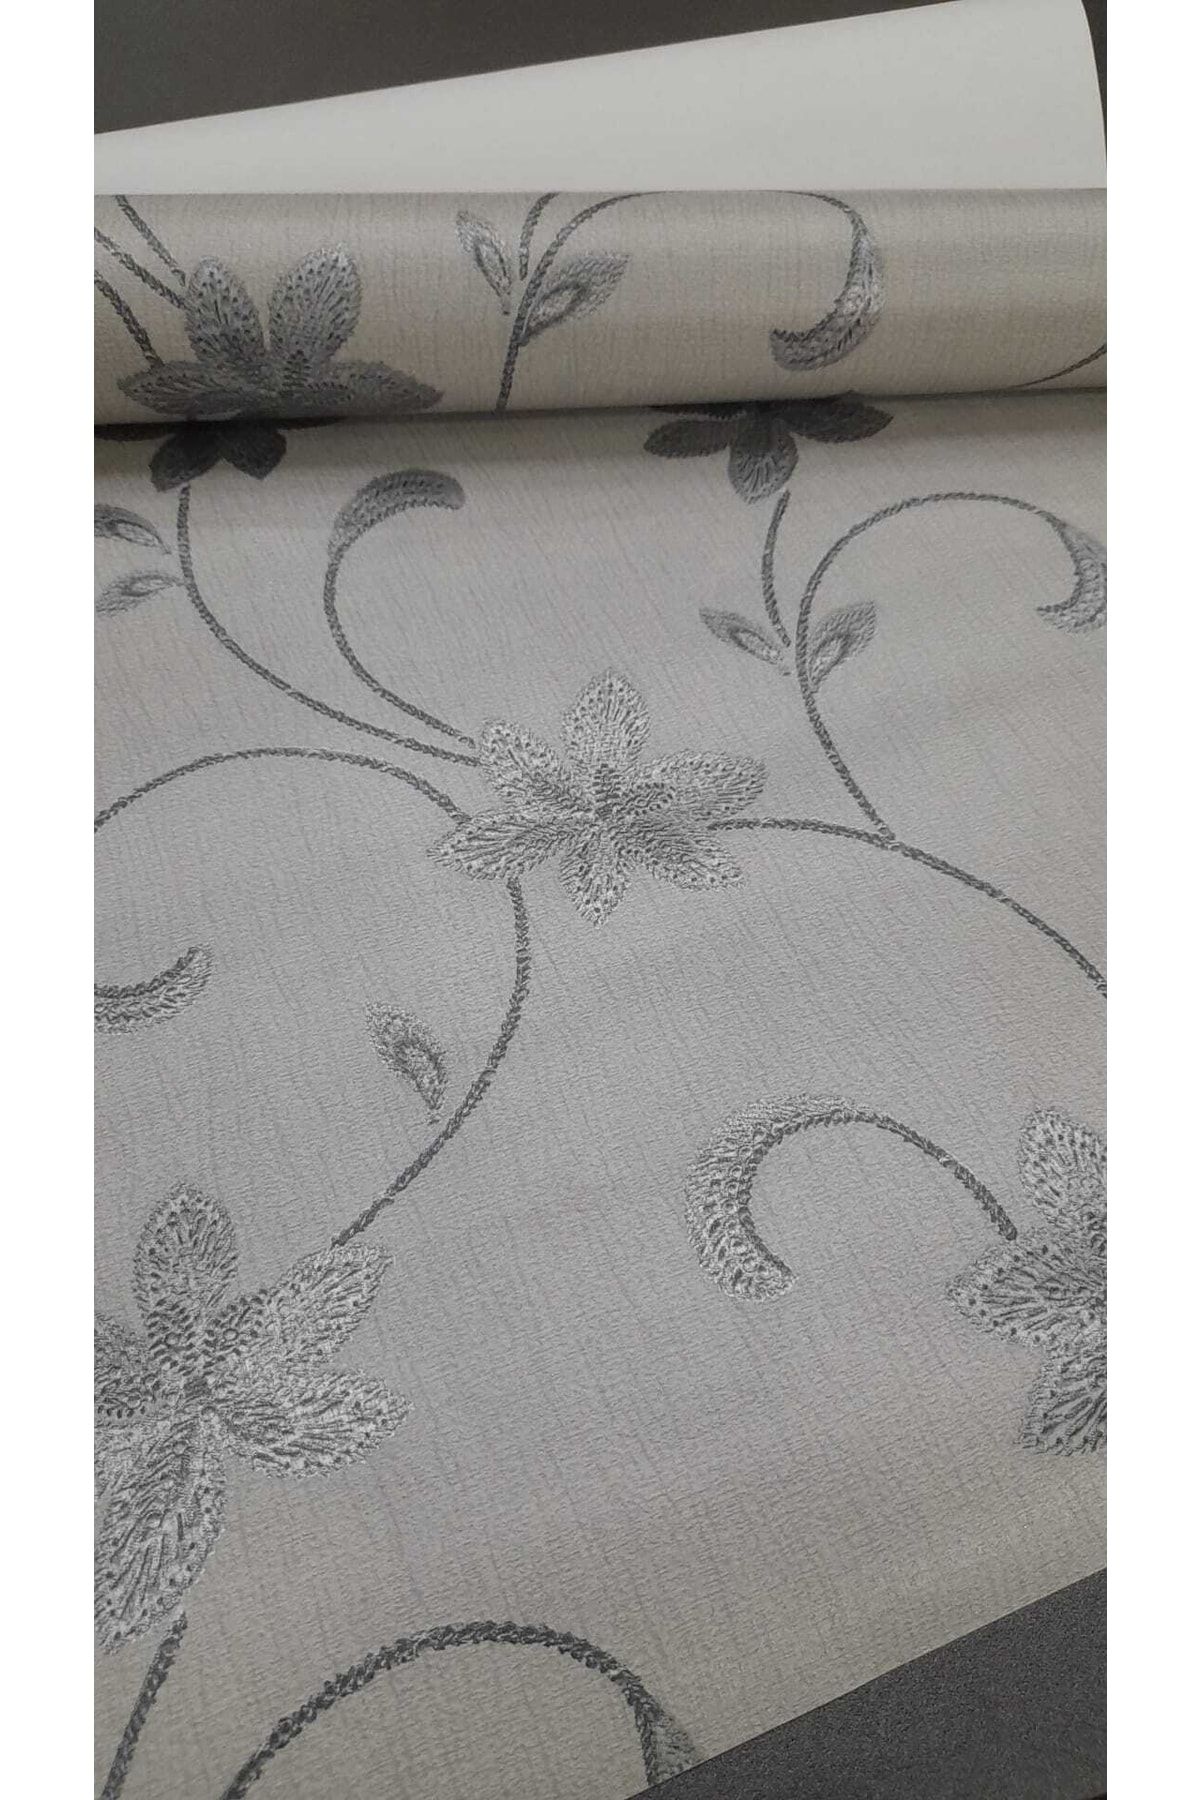 oskar Modern Çiçek Desenli Gri Üzerine Gümüş Detaylı Duvar Kağıdı 5m2